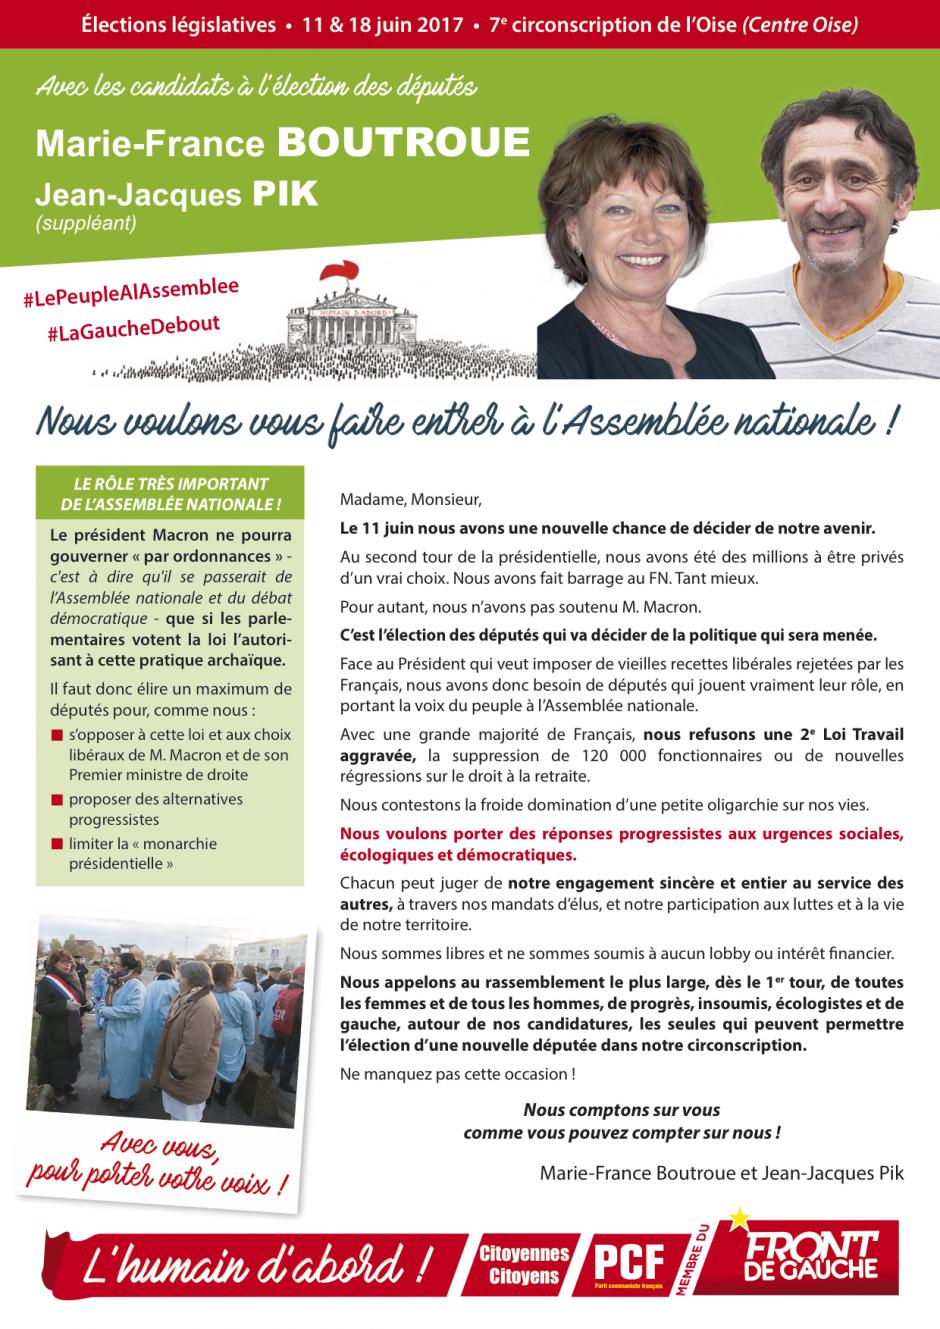 Profession de foi de Marie-France Boutroue et Jean-Jacques Pik - 7e circonscription de l'Oise, 11 juin 2017